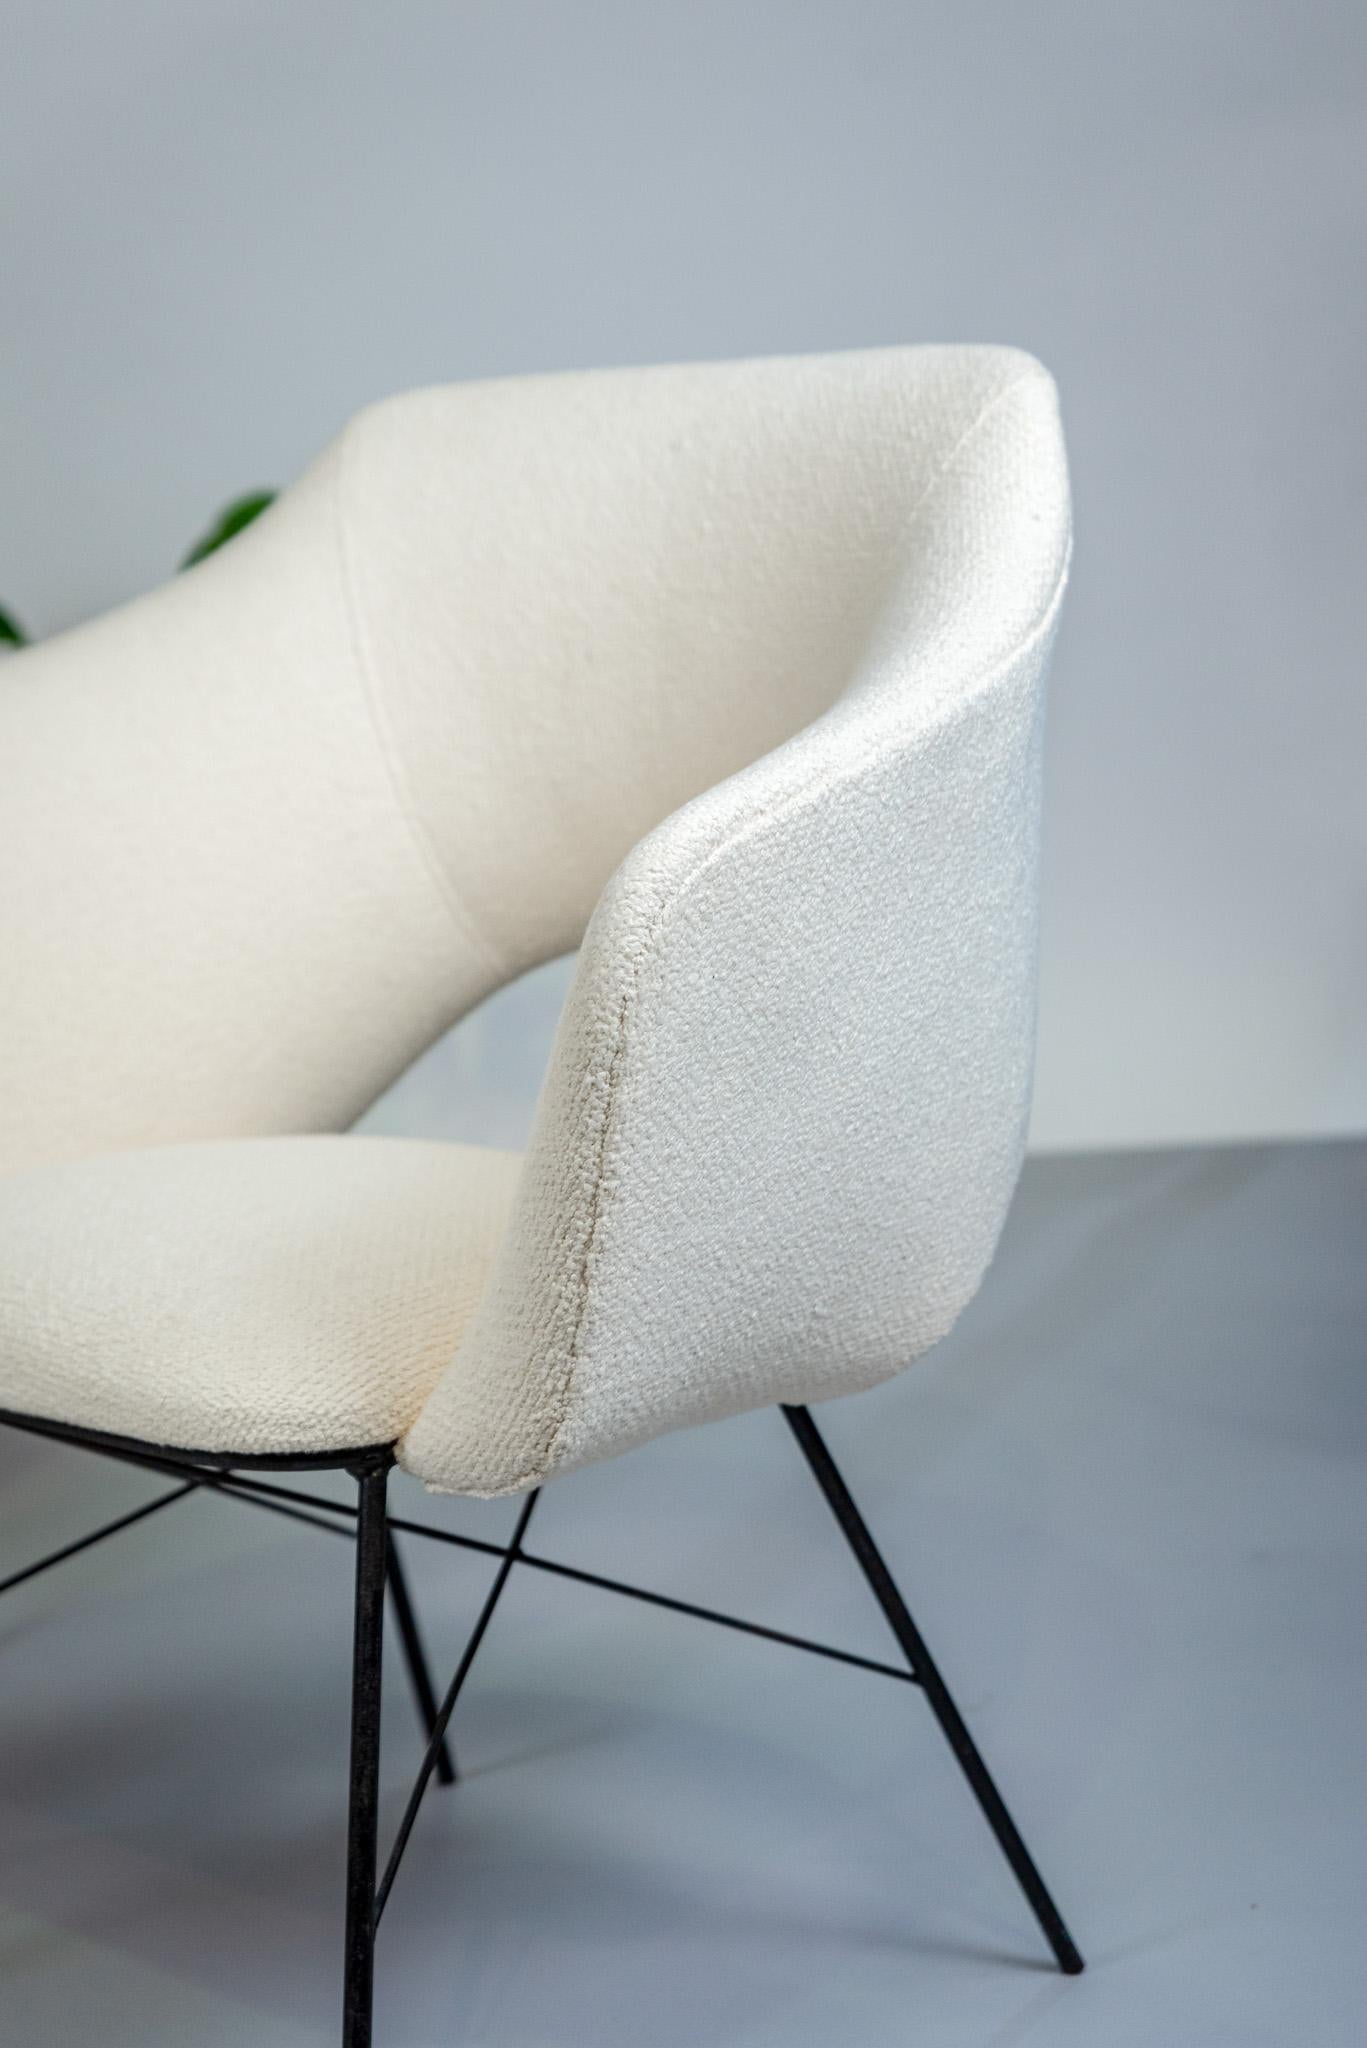 Paire de fauteuils en métal tubulaire et tapisserie en coton bouclé, produits par Forma dans les années 1960. Le célèbre duo de designers signe ici une pièce innovante dans laquelle on retrouve les éléments qui ont fait leur réputation de créateurs